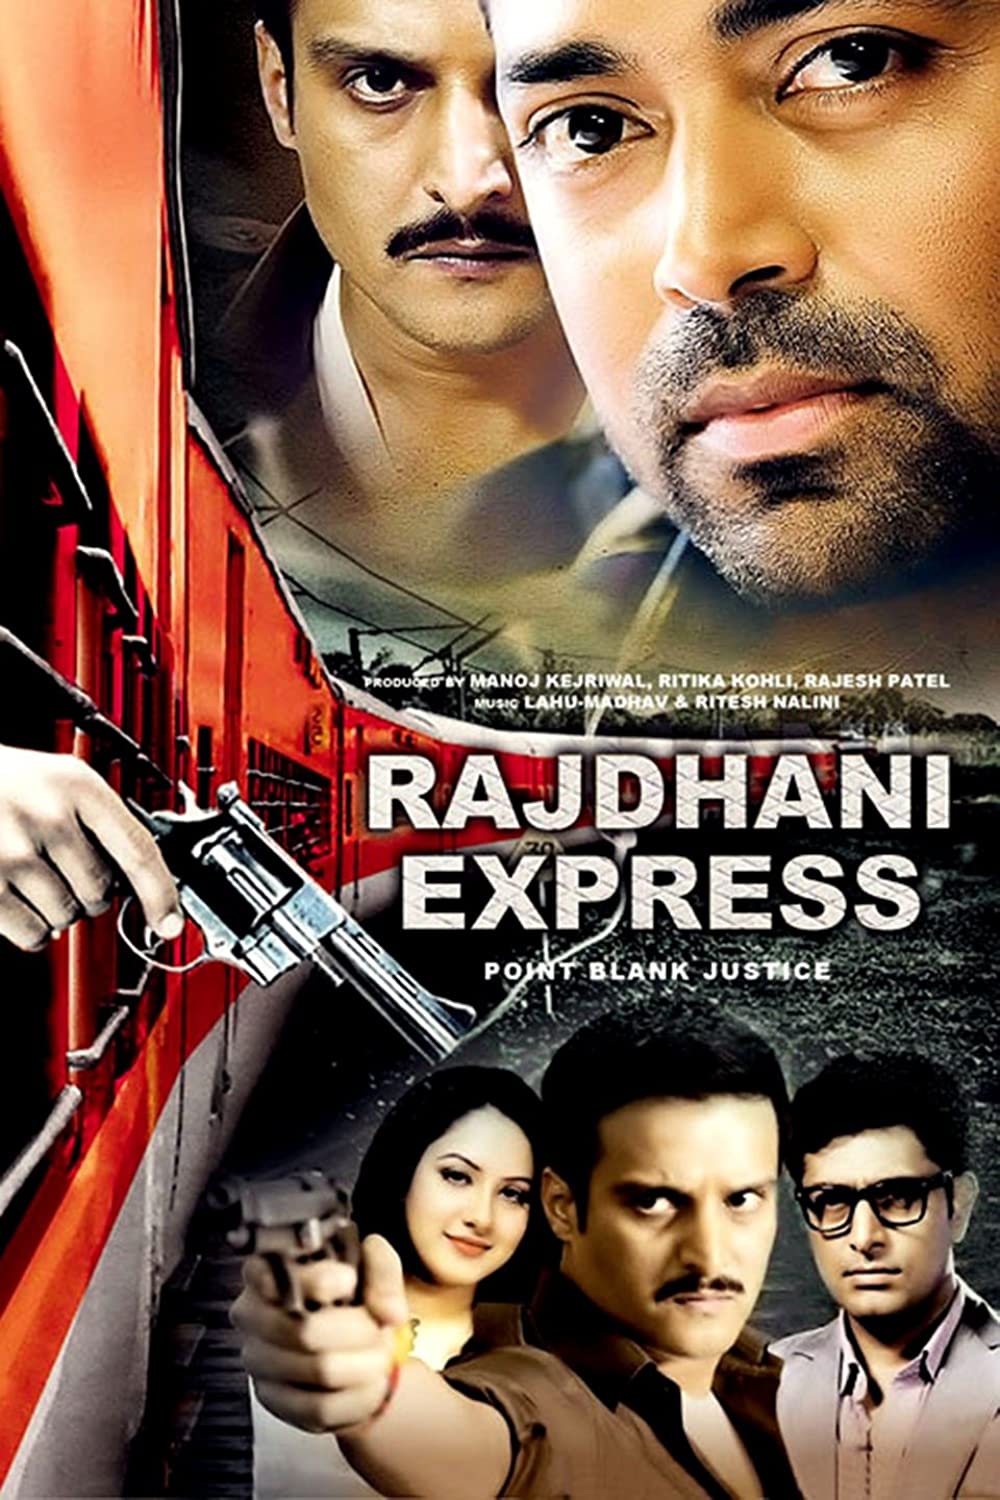 Rajdhani Express 2013 Hindi Movie 720p HDRip 1.1GB Download & Watch Online